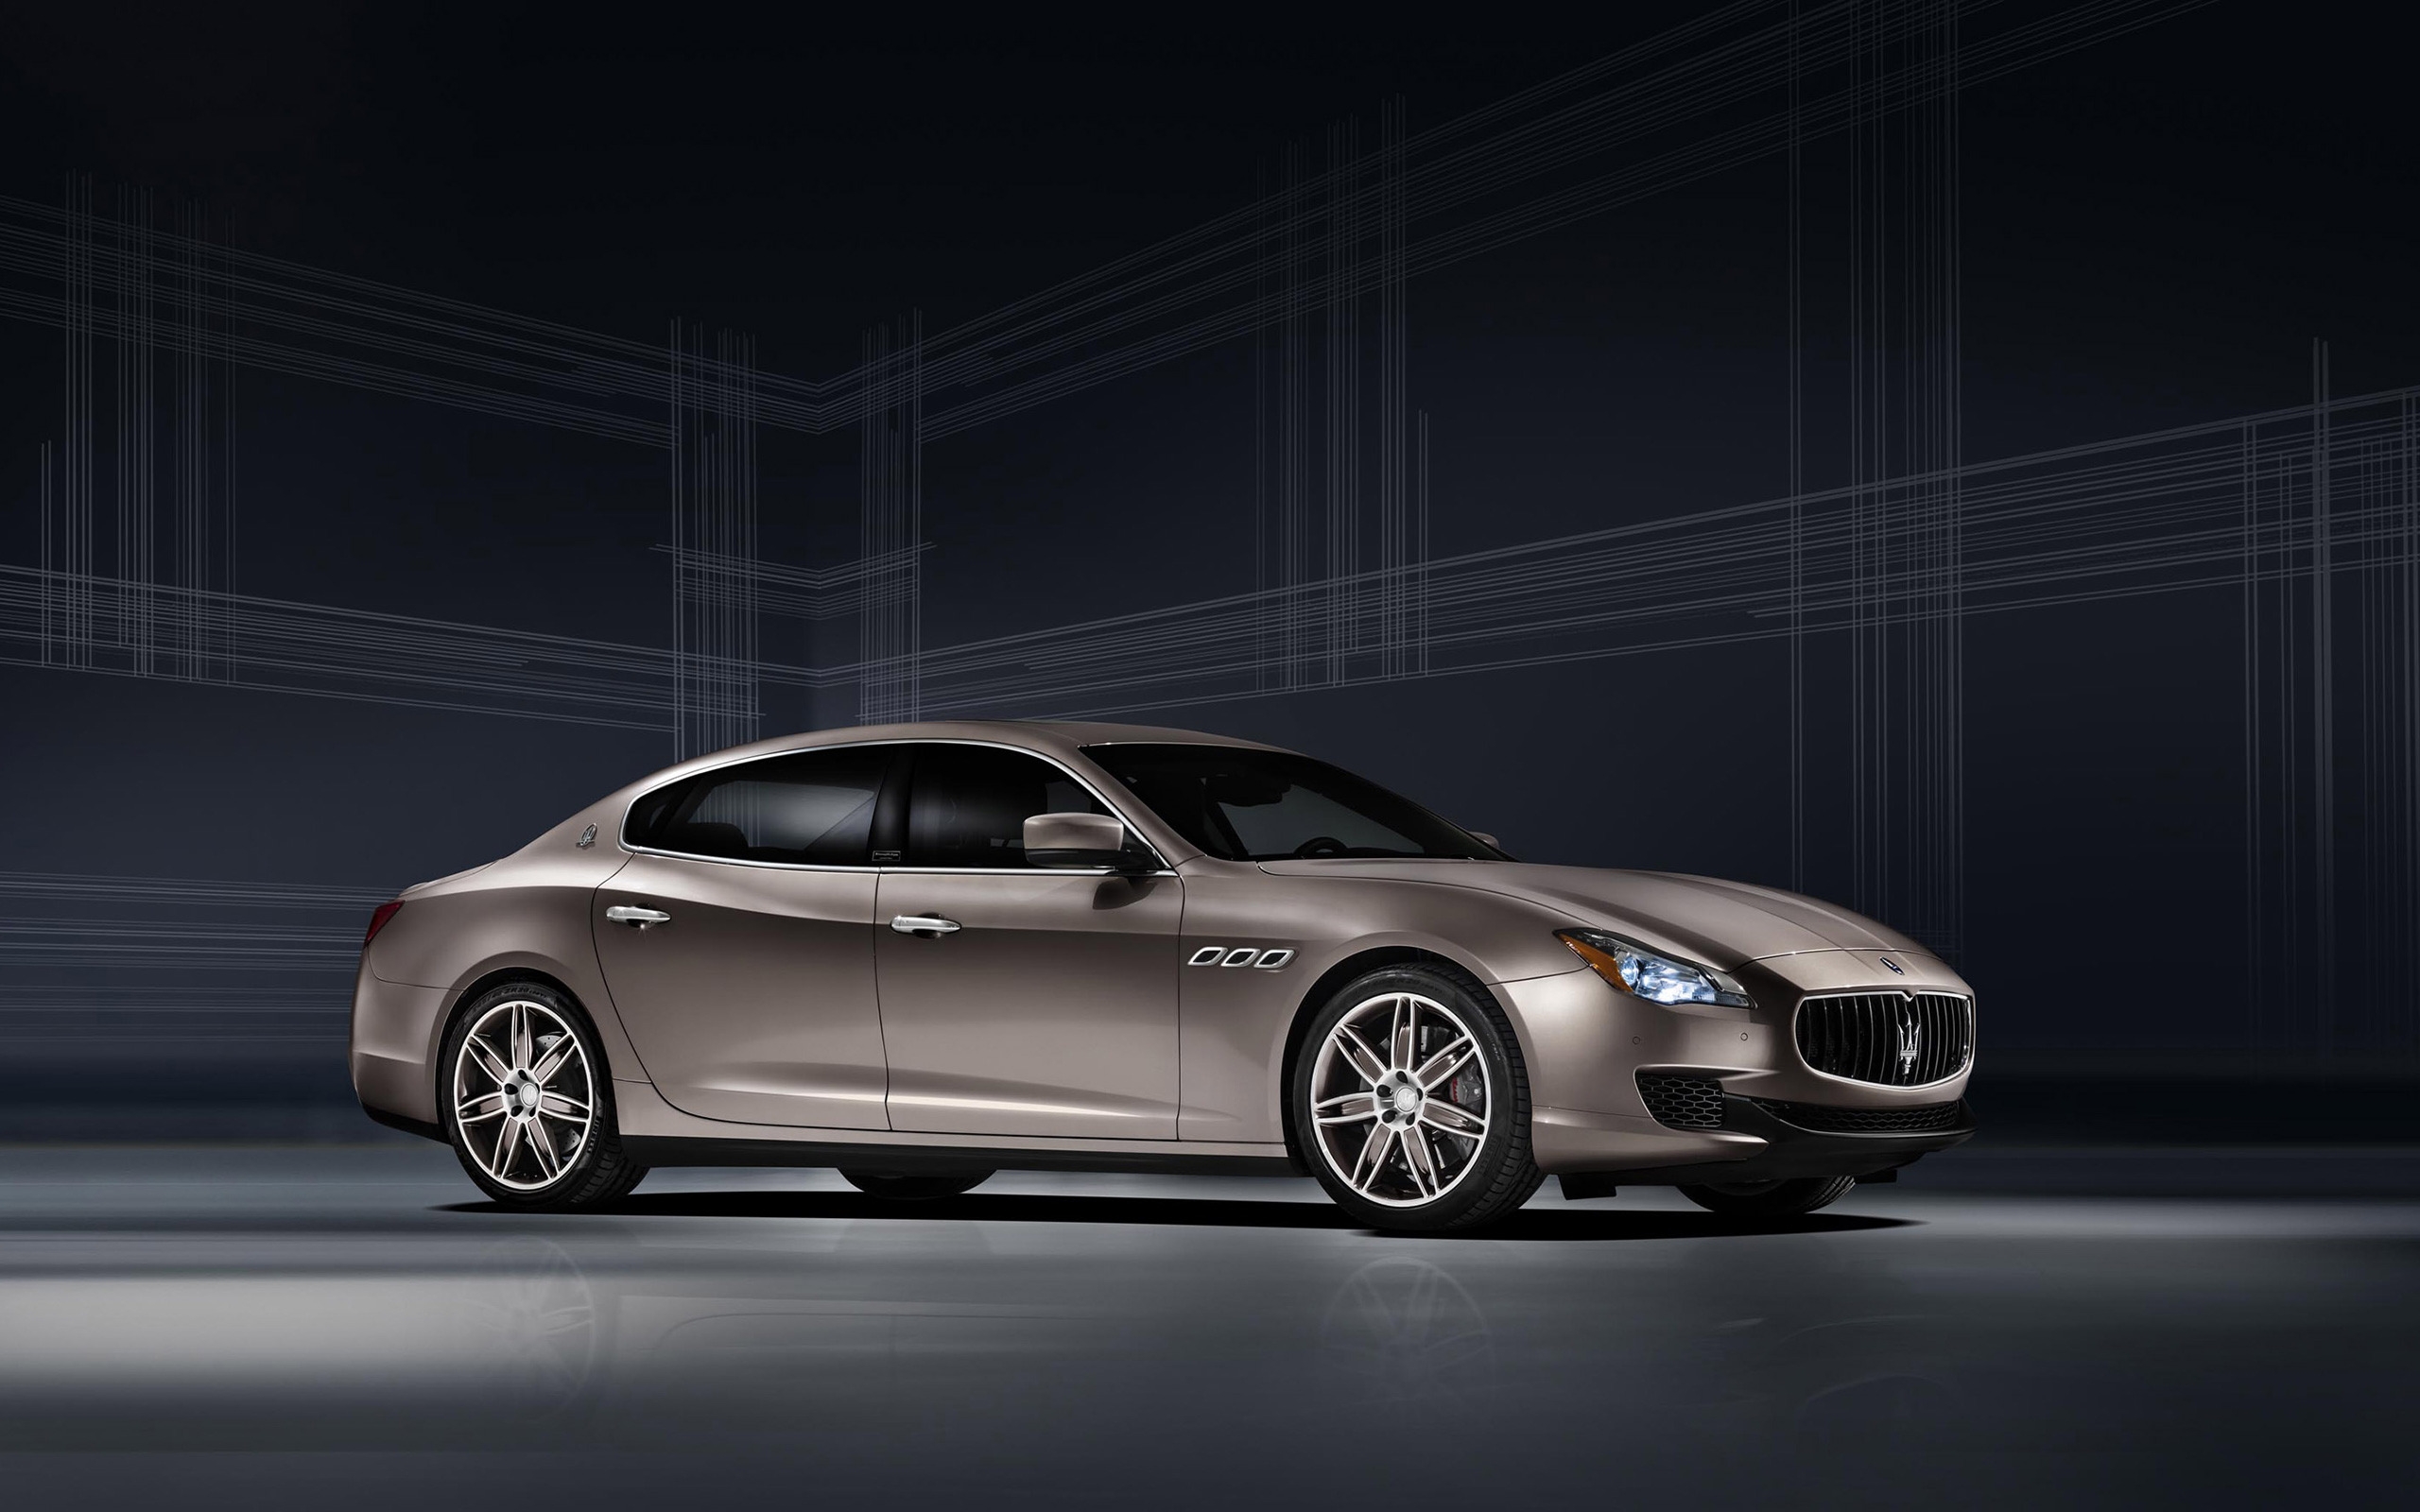 Maserati Quattroporte Ermenegildo Zegna Edition for 2560 x 1600 widescreen resolution